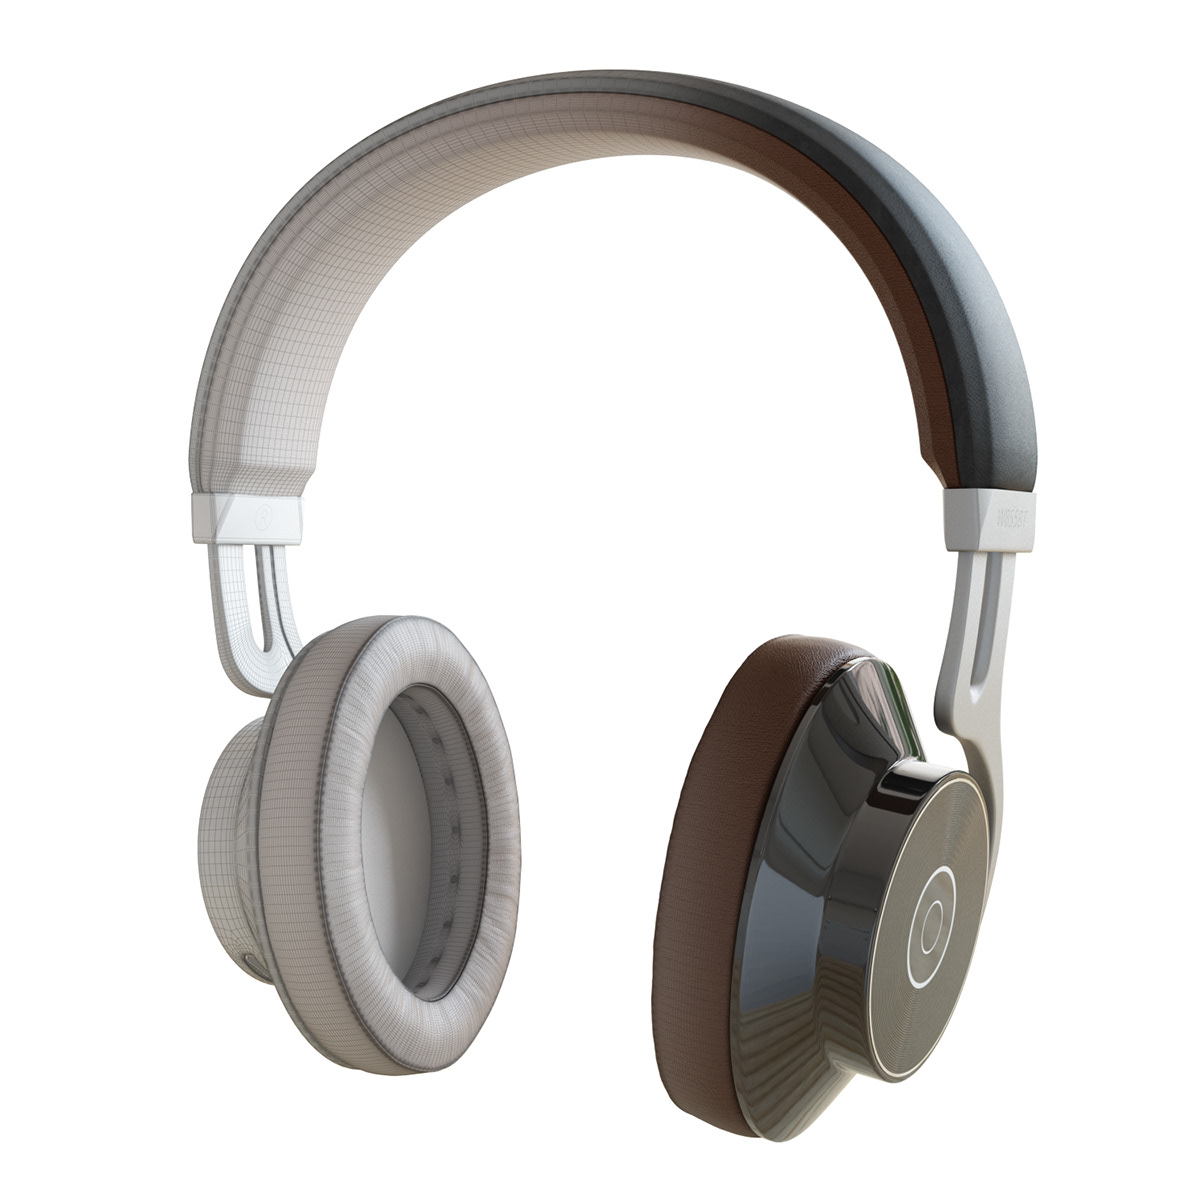 3dmodel 3dsmax corona download Edifier headphones vray